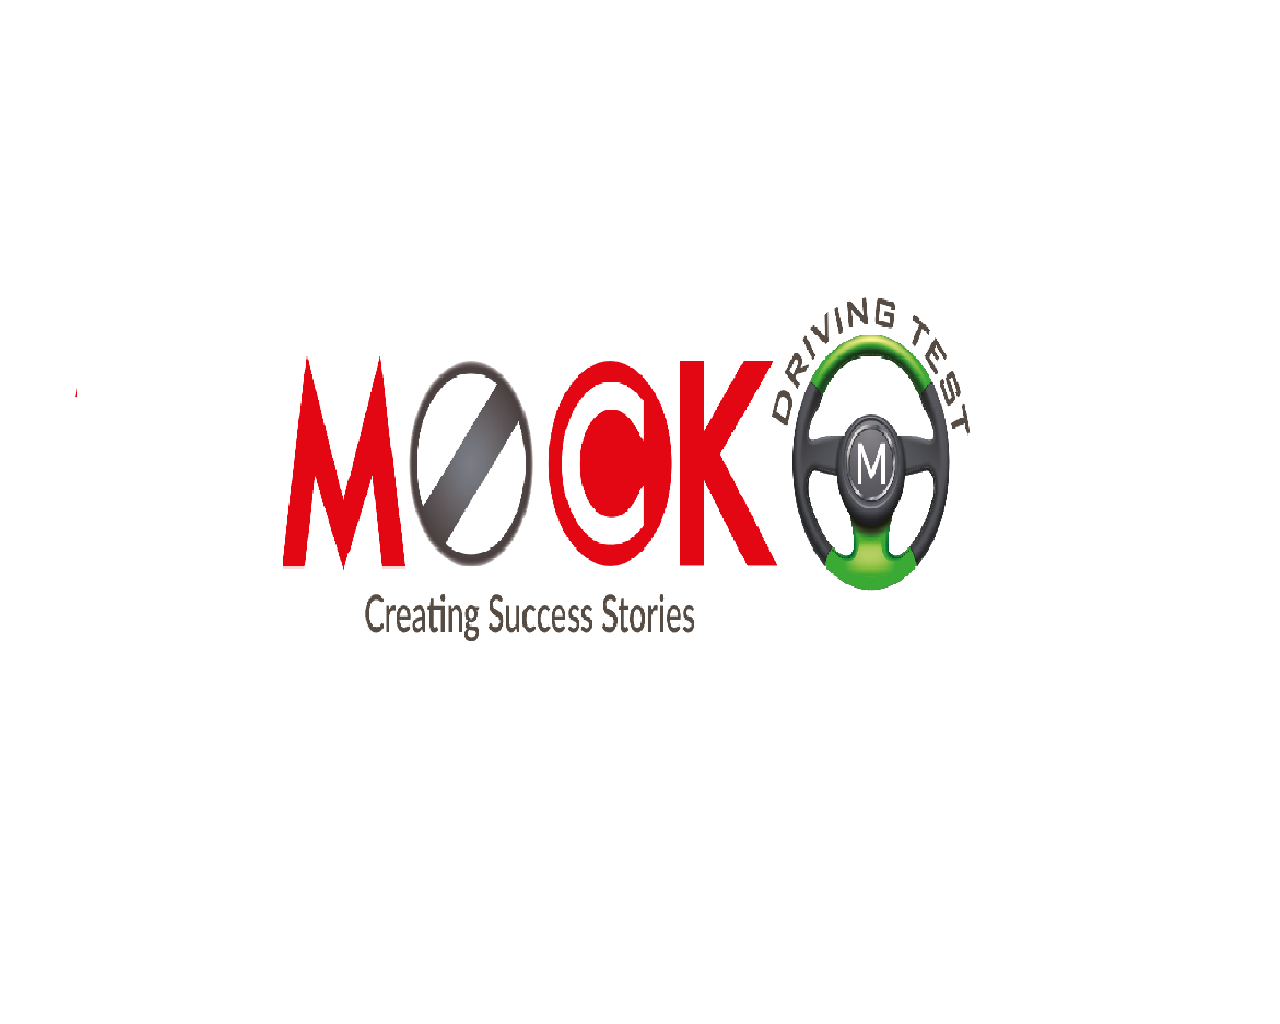 Logo of MockDrivingTestcom